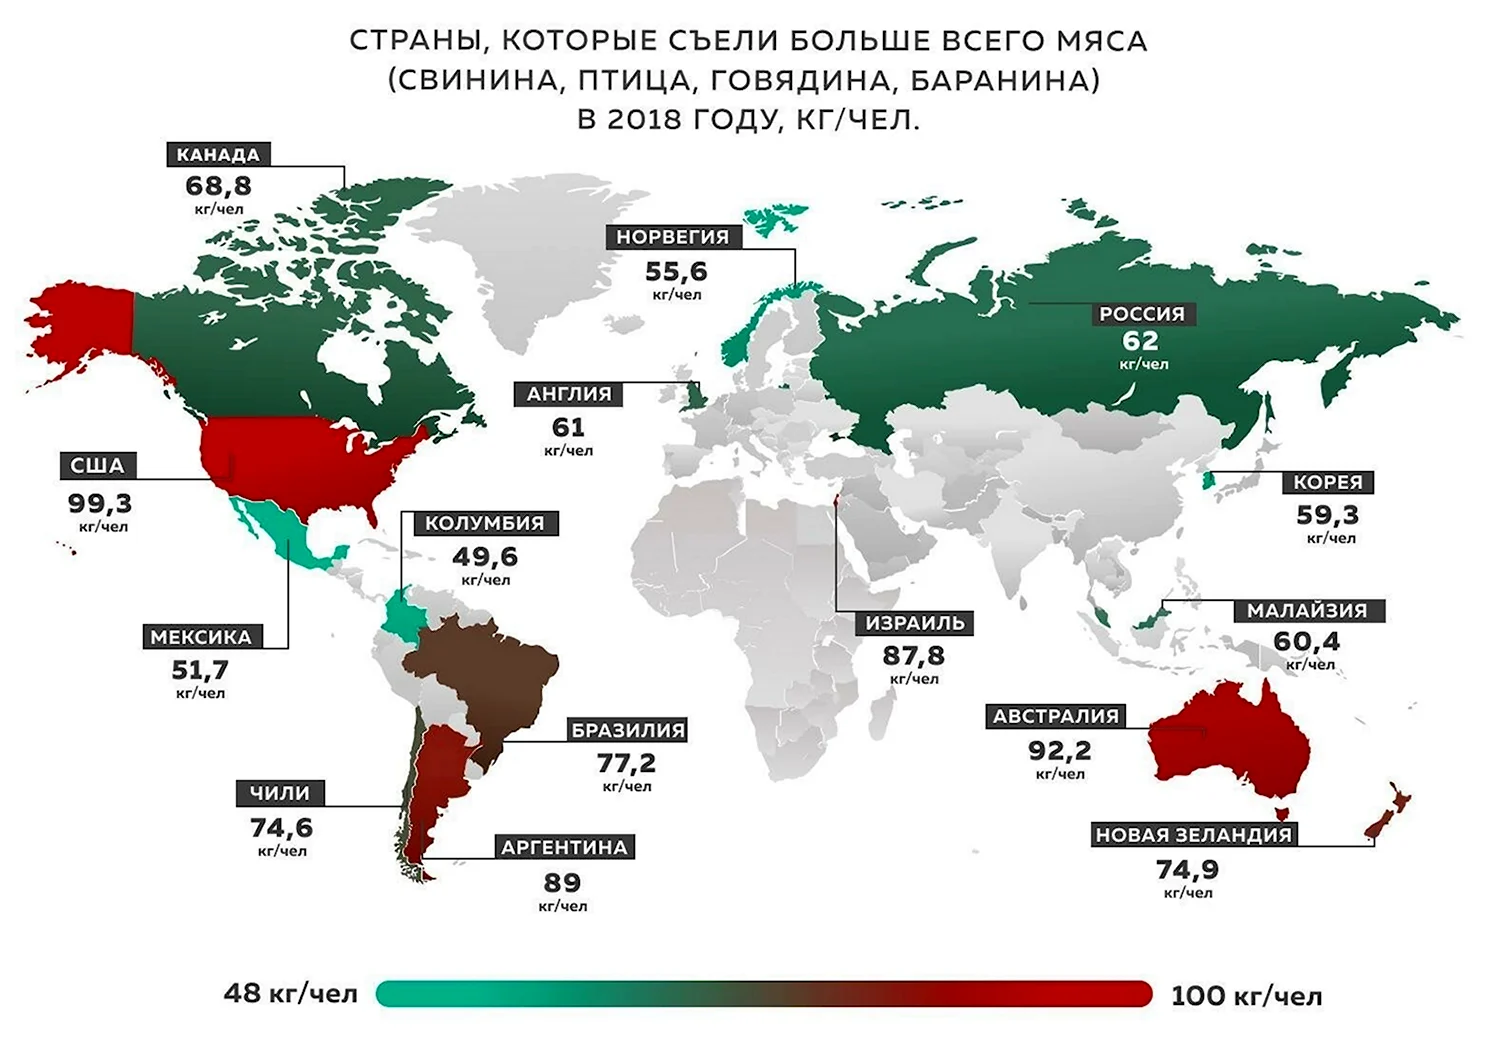 Потребление мяса птицы на душу населения в разных странах